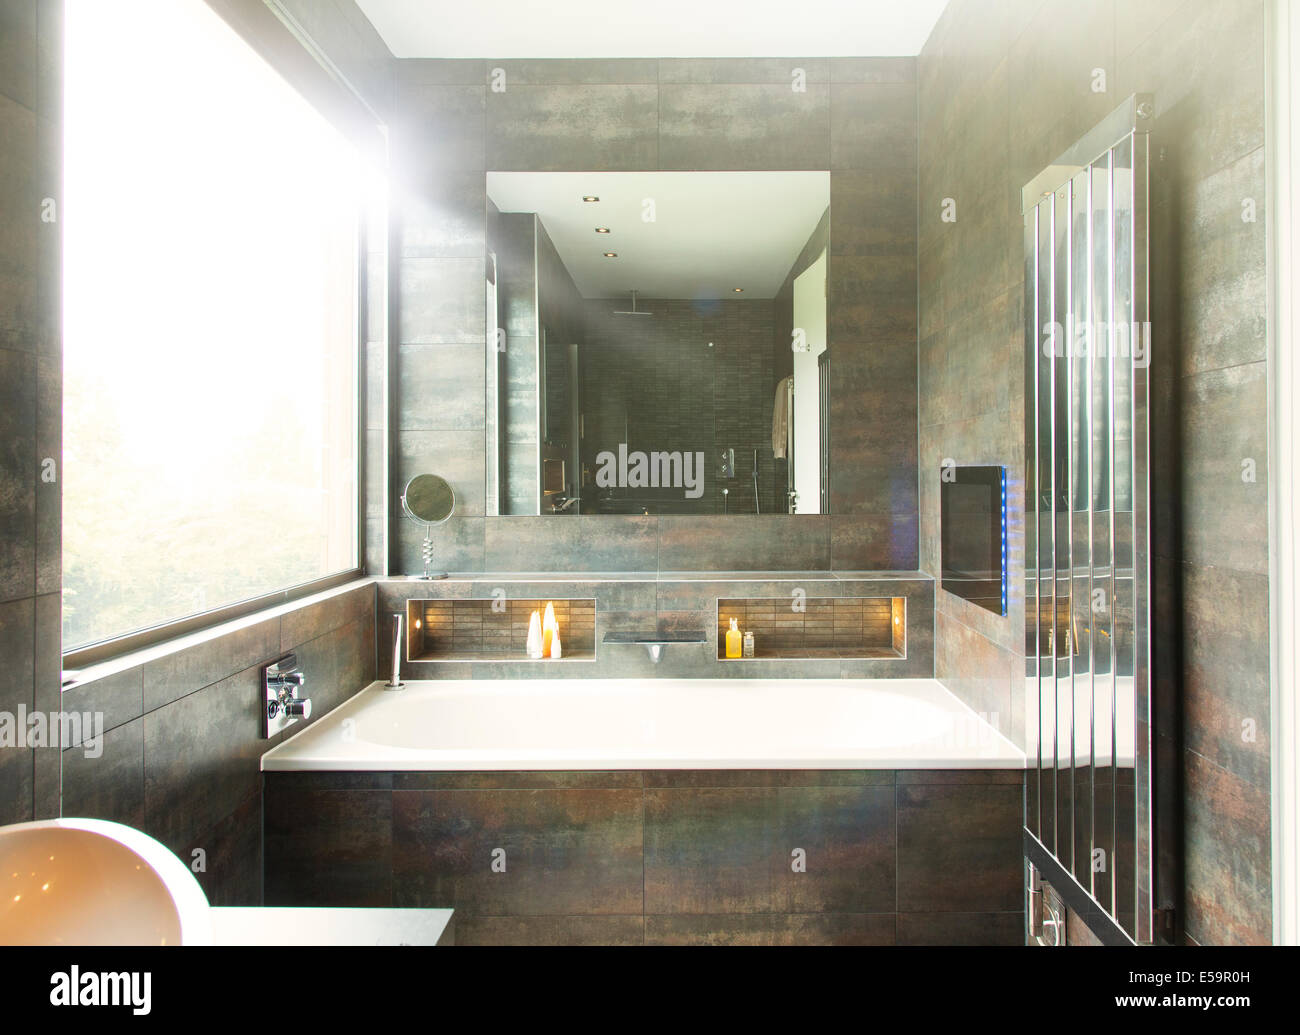 Badewanne und Spiegel im Badezimmer Stockfoto